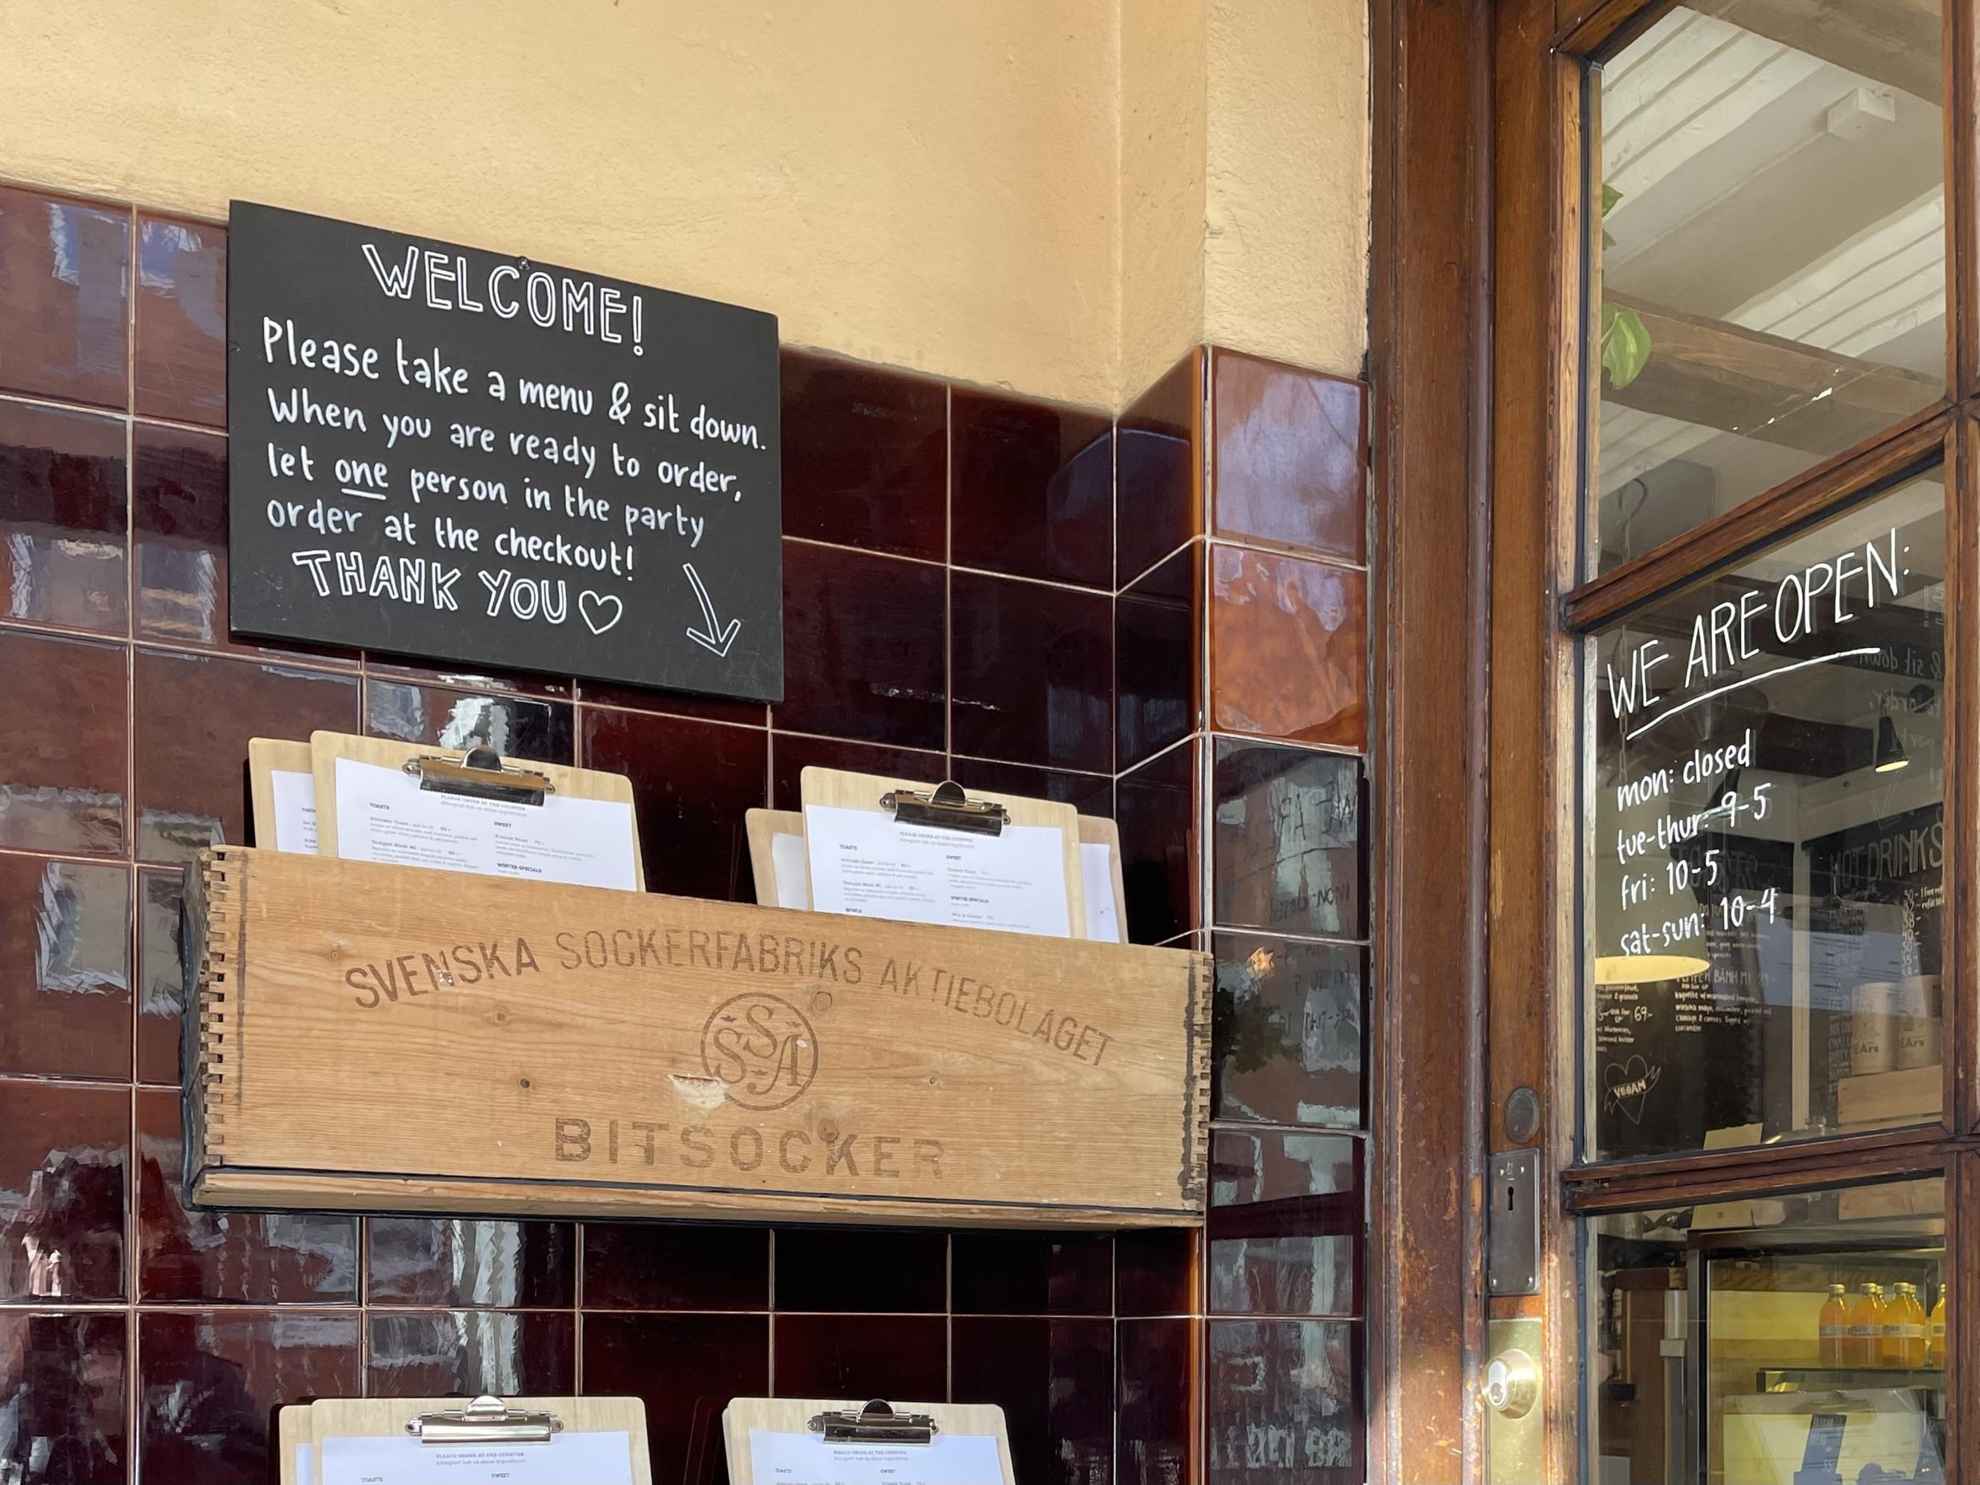 Un mur avec une petite pancarte de bienvenue et des menus rangés dans une caisse.